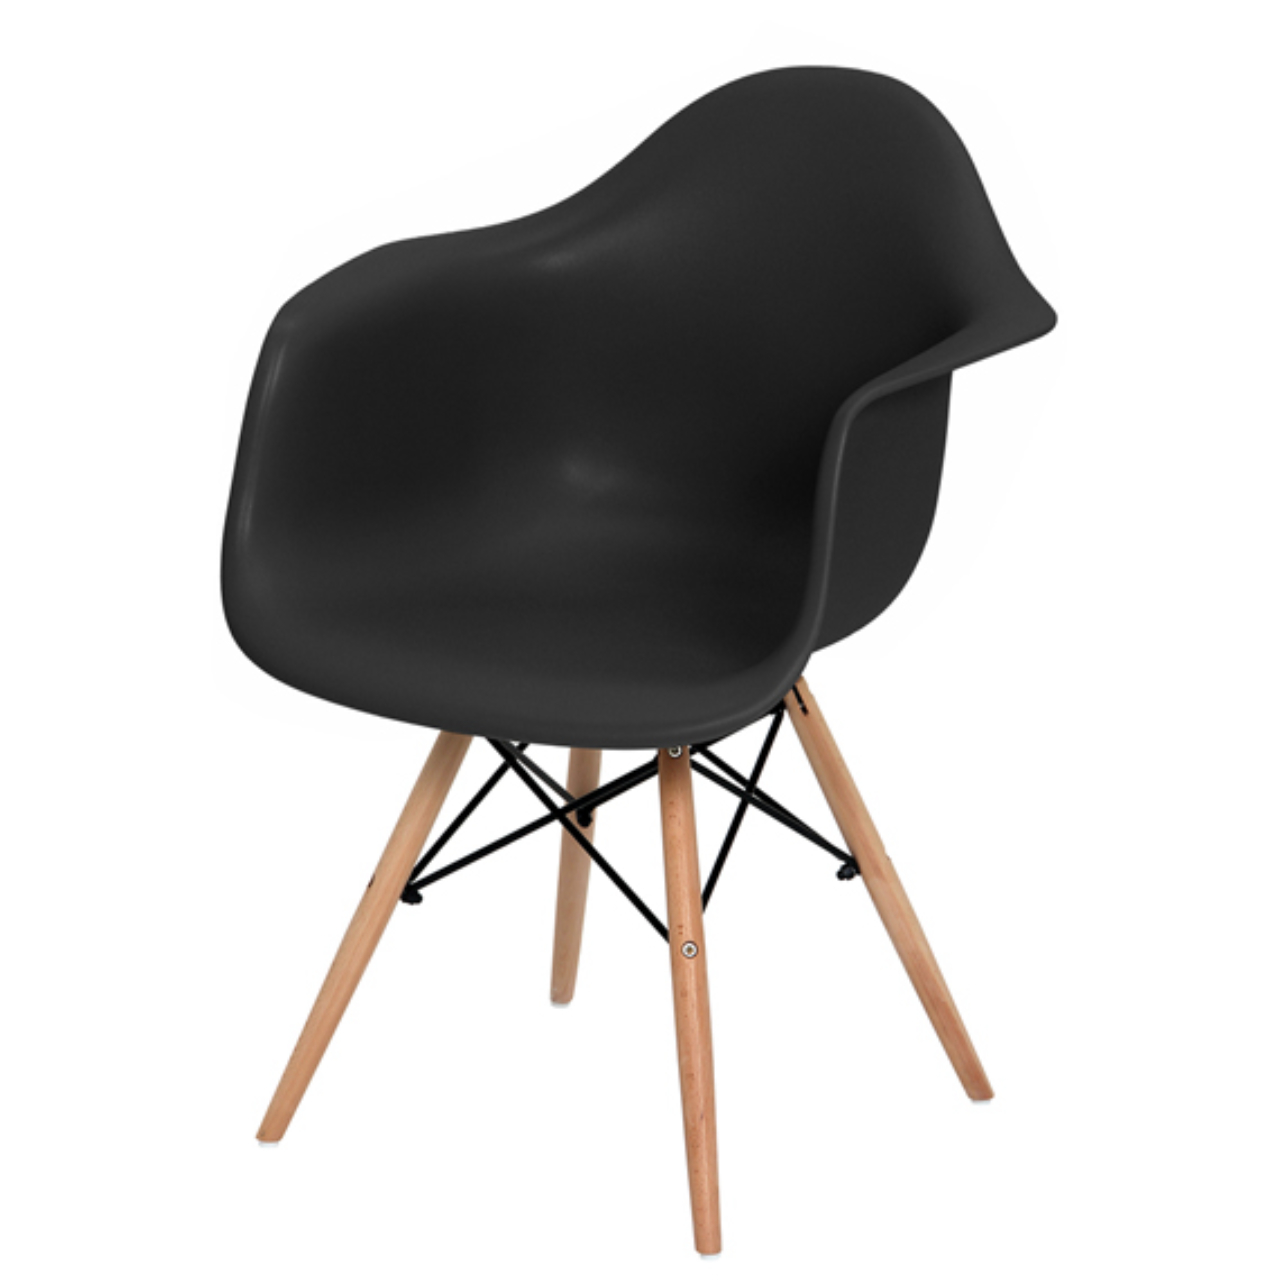 Cadeira Eames Woods sai por R$ 279 na loja e R$ 299 com entrega e montagem em casa. Foto: divulgação